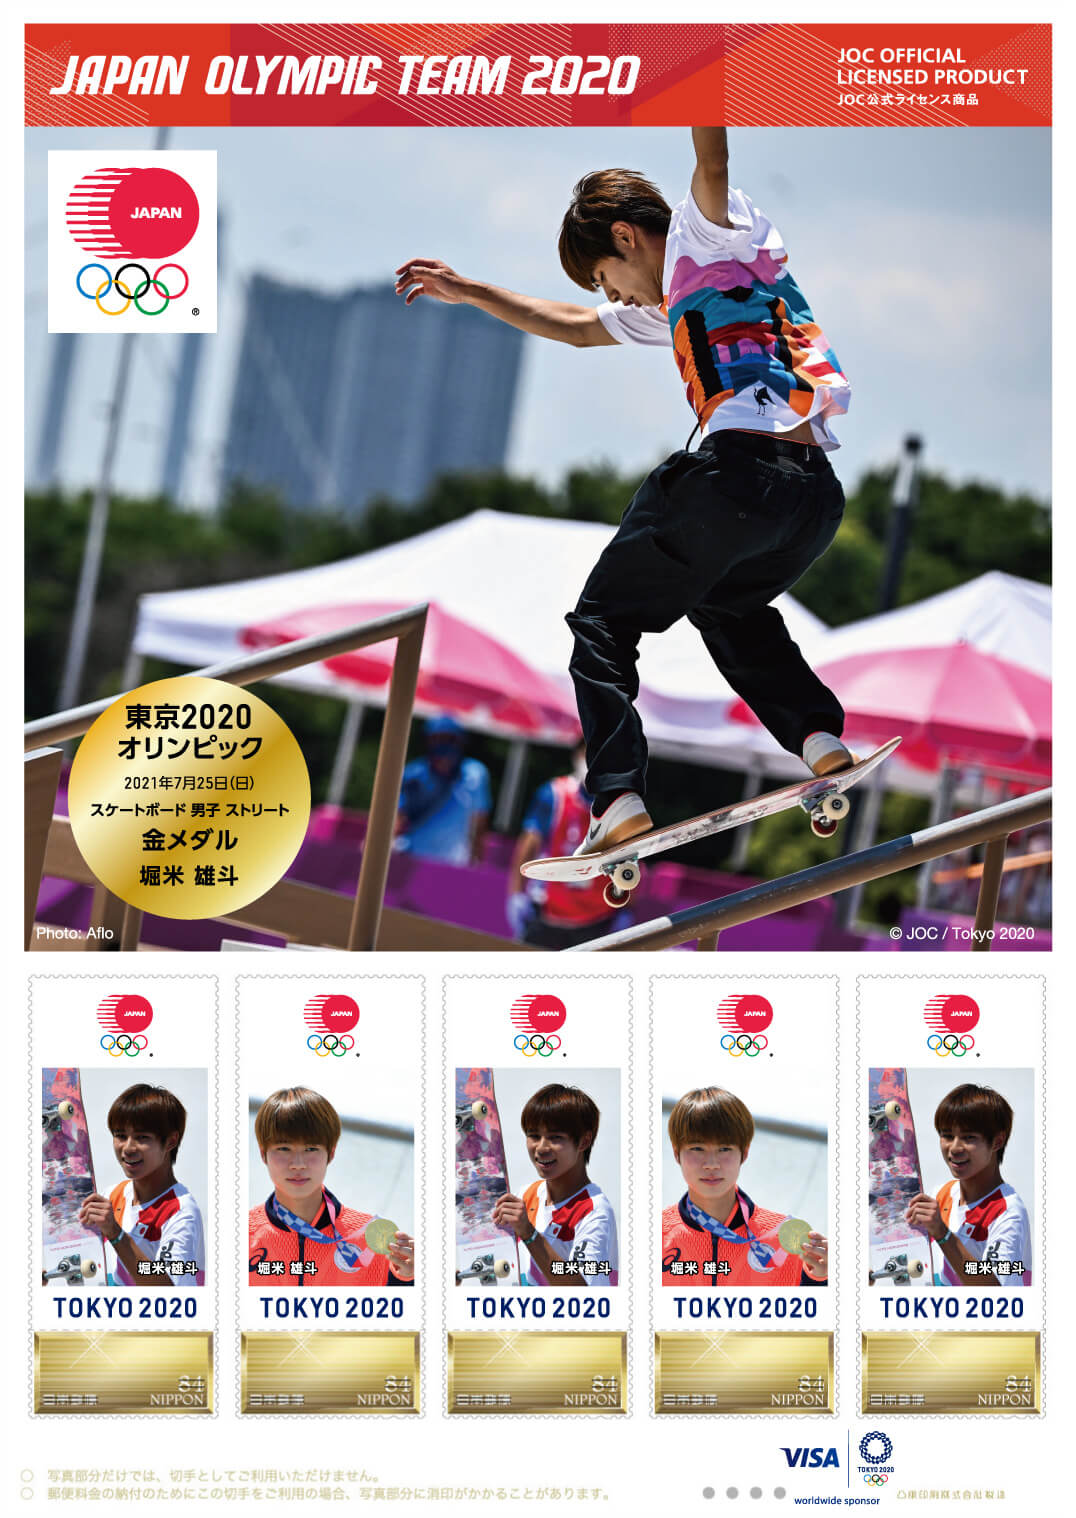 東京オリンピック日本代表選手 メダリスト公式フレーム切手 スケートボード 男子 ストリート 堀米 雄斗選手 日本郵便